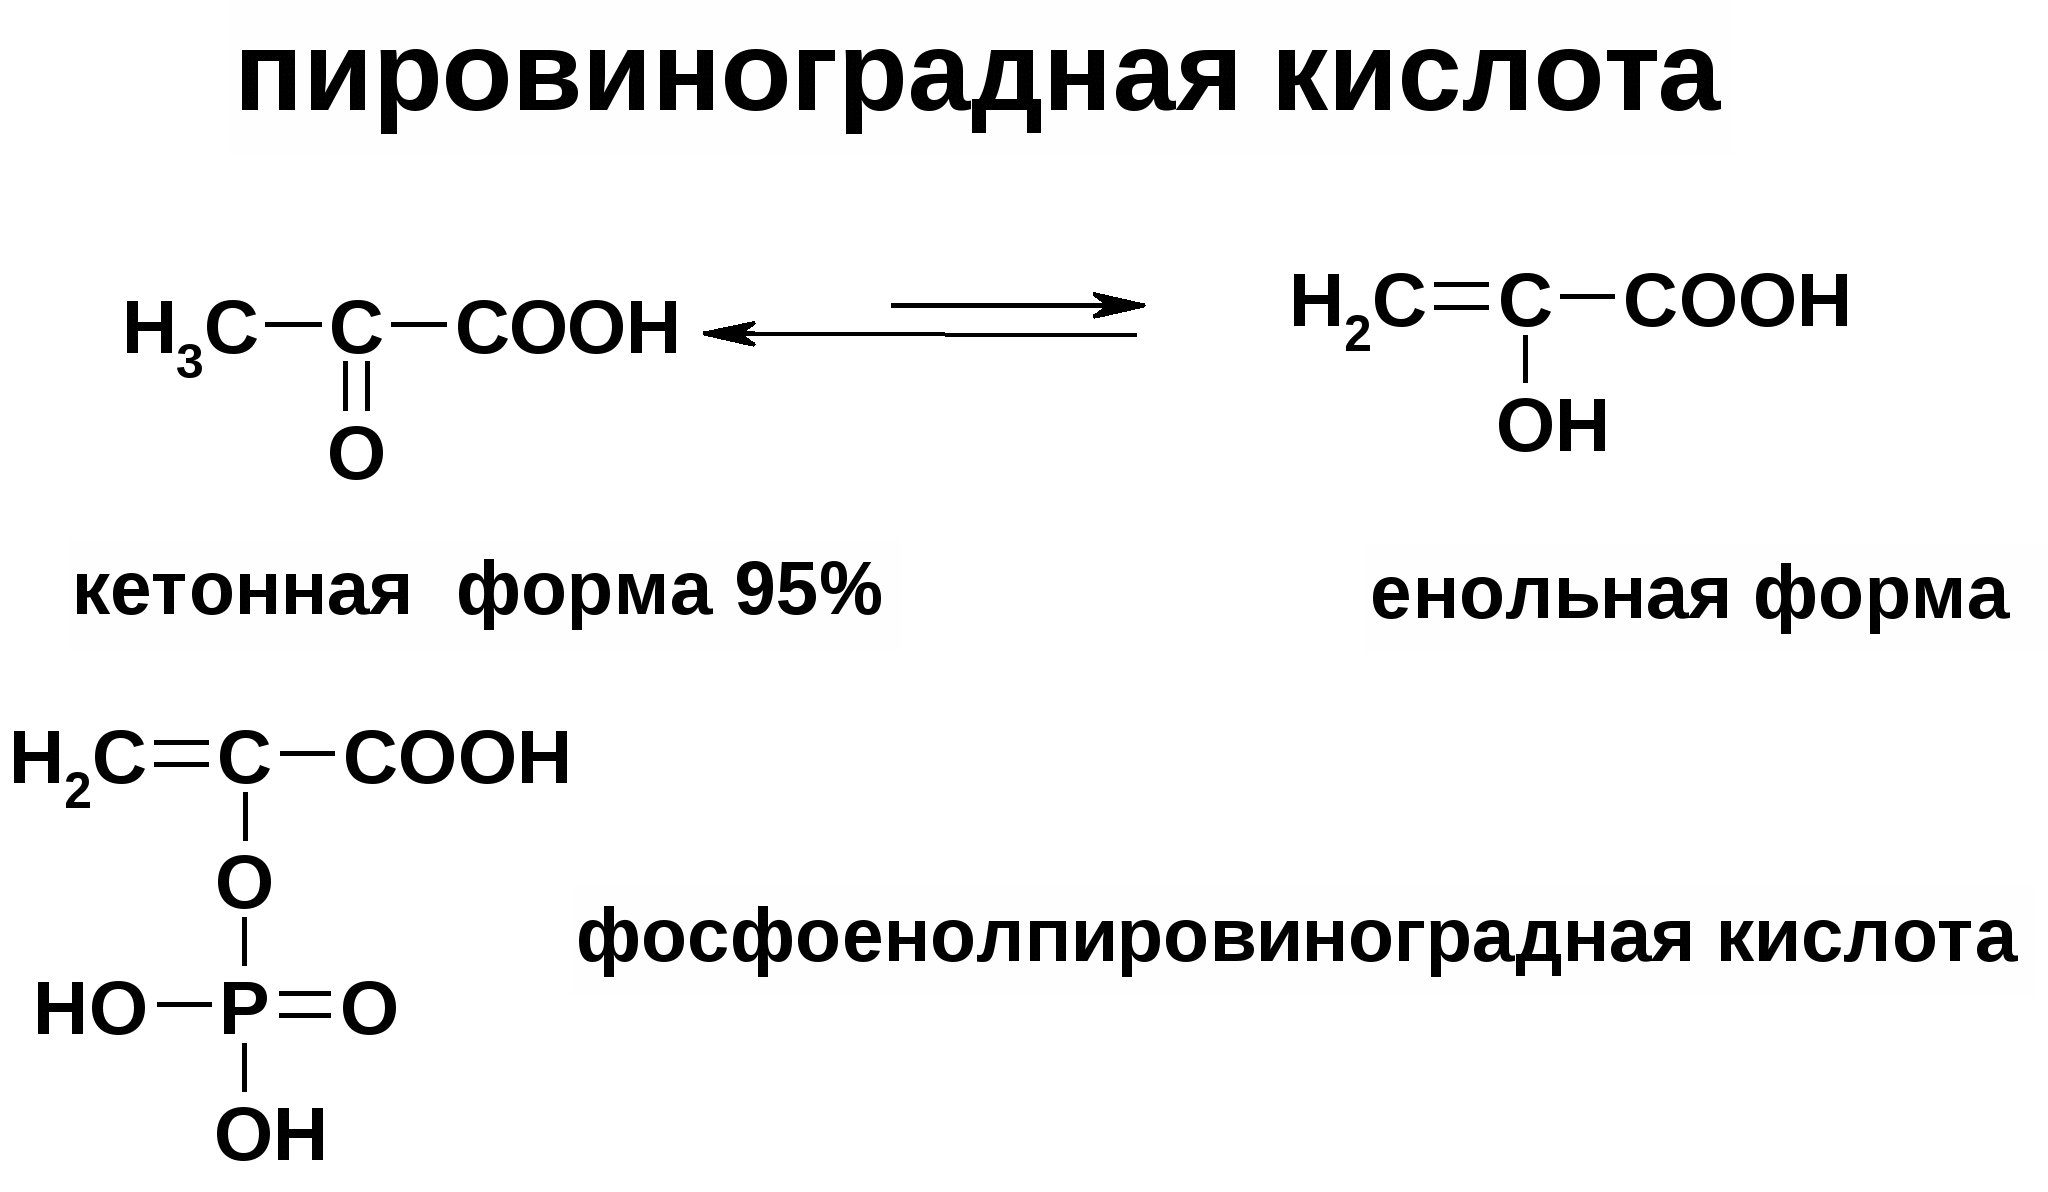 Пировиноградная кислота формула. Кето-енольная таутомерия пировиноградной кислоты реакция. Пировиноградная кислота и фосфорная кислота реакция. Формула пировиноградной кислоты ПВК. Пировиноградная кислота строение.